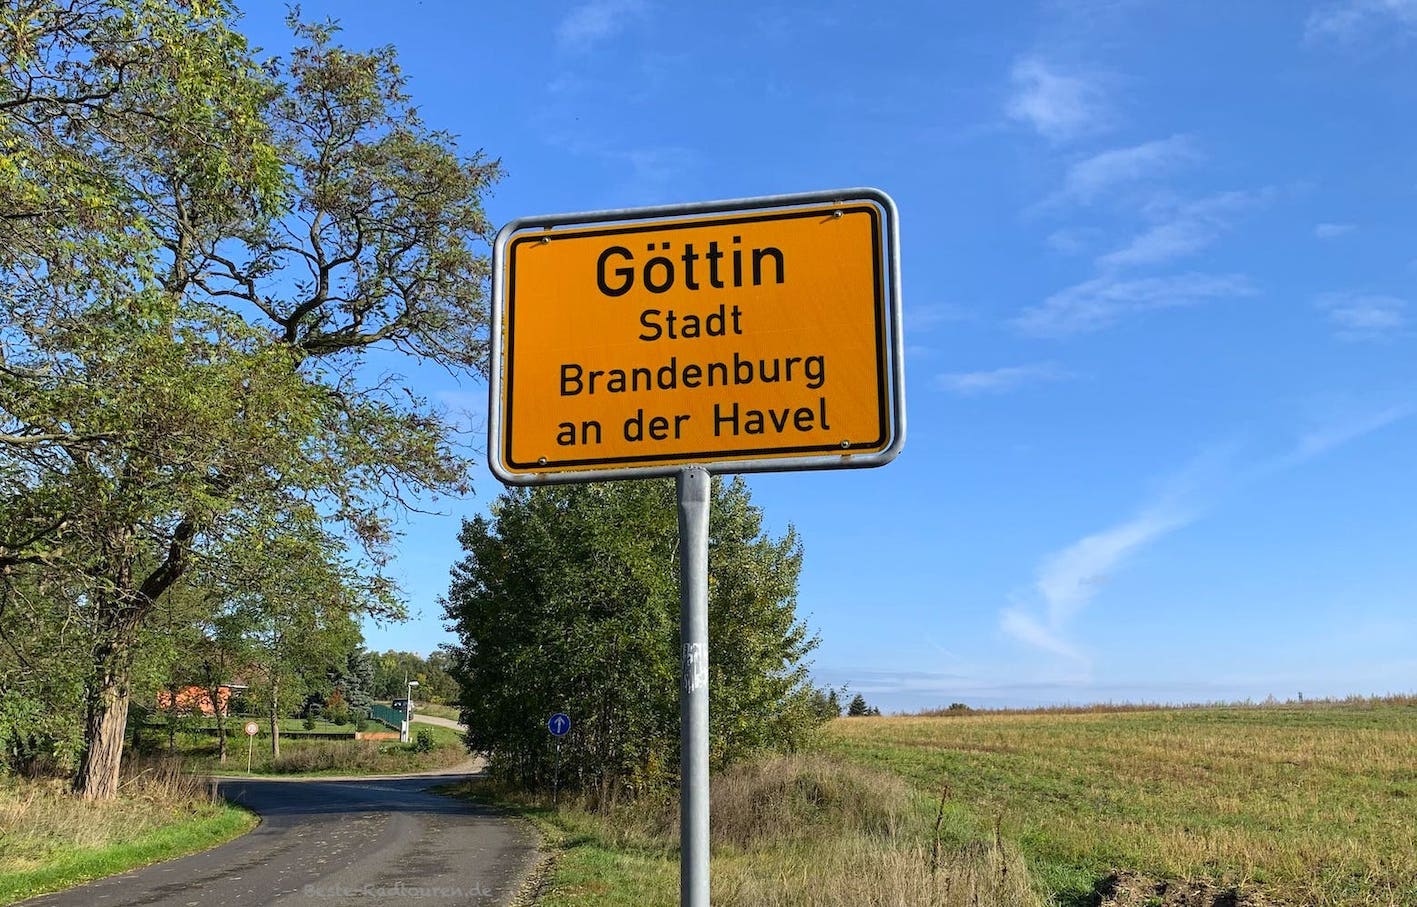 Dorf Göttin liegt ca 5 km südlich von Brandenburg